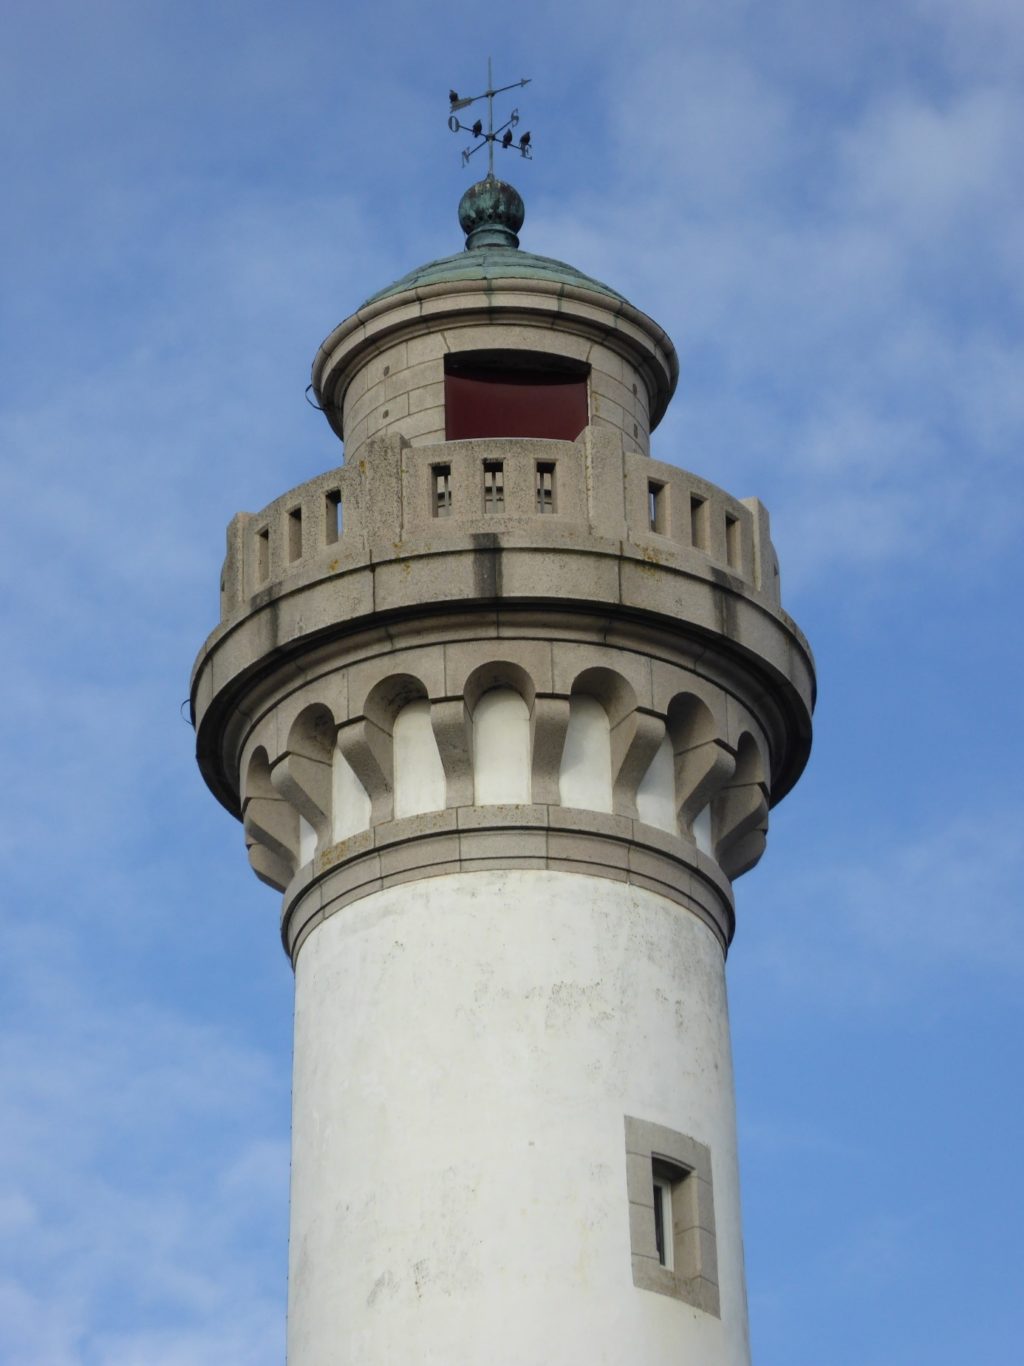 Photographie du haut de la tour du phare de Kerlédé.